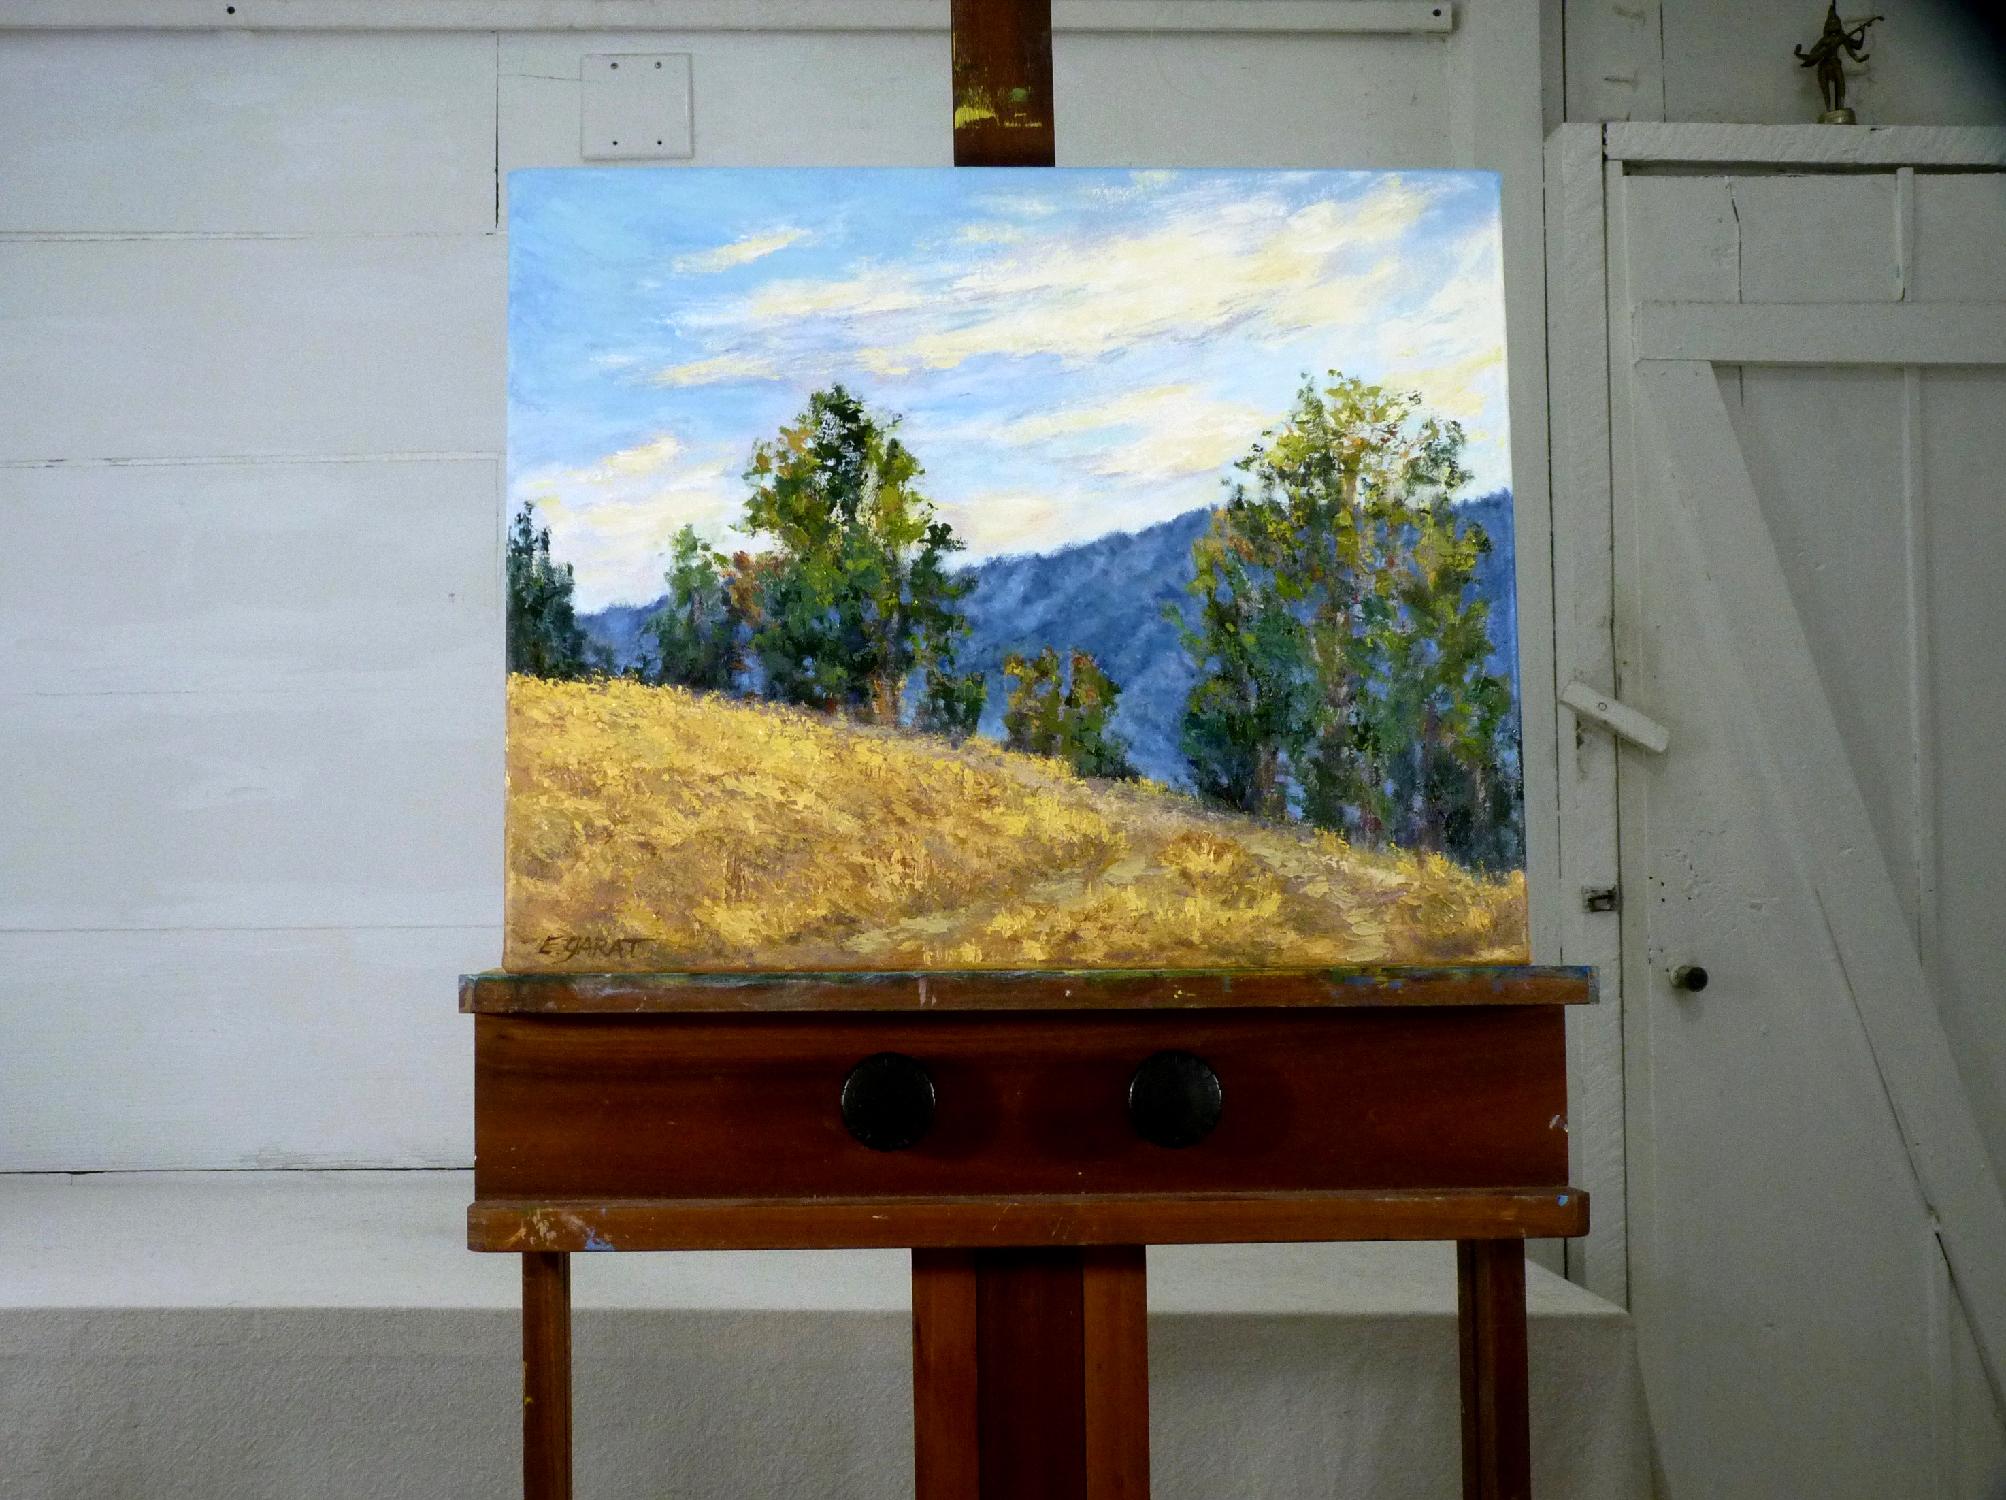 <p>Kommentare der Künstlerin<br>Die Künstlerin Elizabeth Garat entwickelte diese impressionistische Landschaft nach einer sommerlichen Wanderung durch die sanften Hügel Südkaliforniens. Sie sagt, es war ein warmer Tag unter einem dynamischen Himmel.